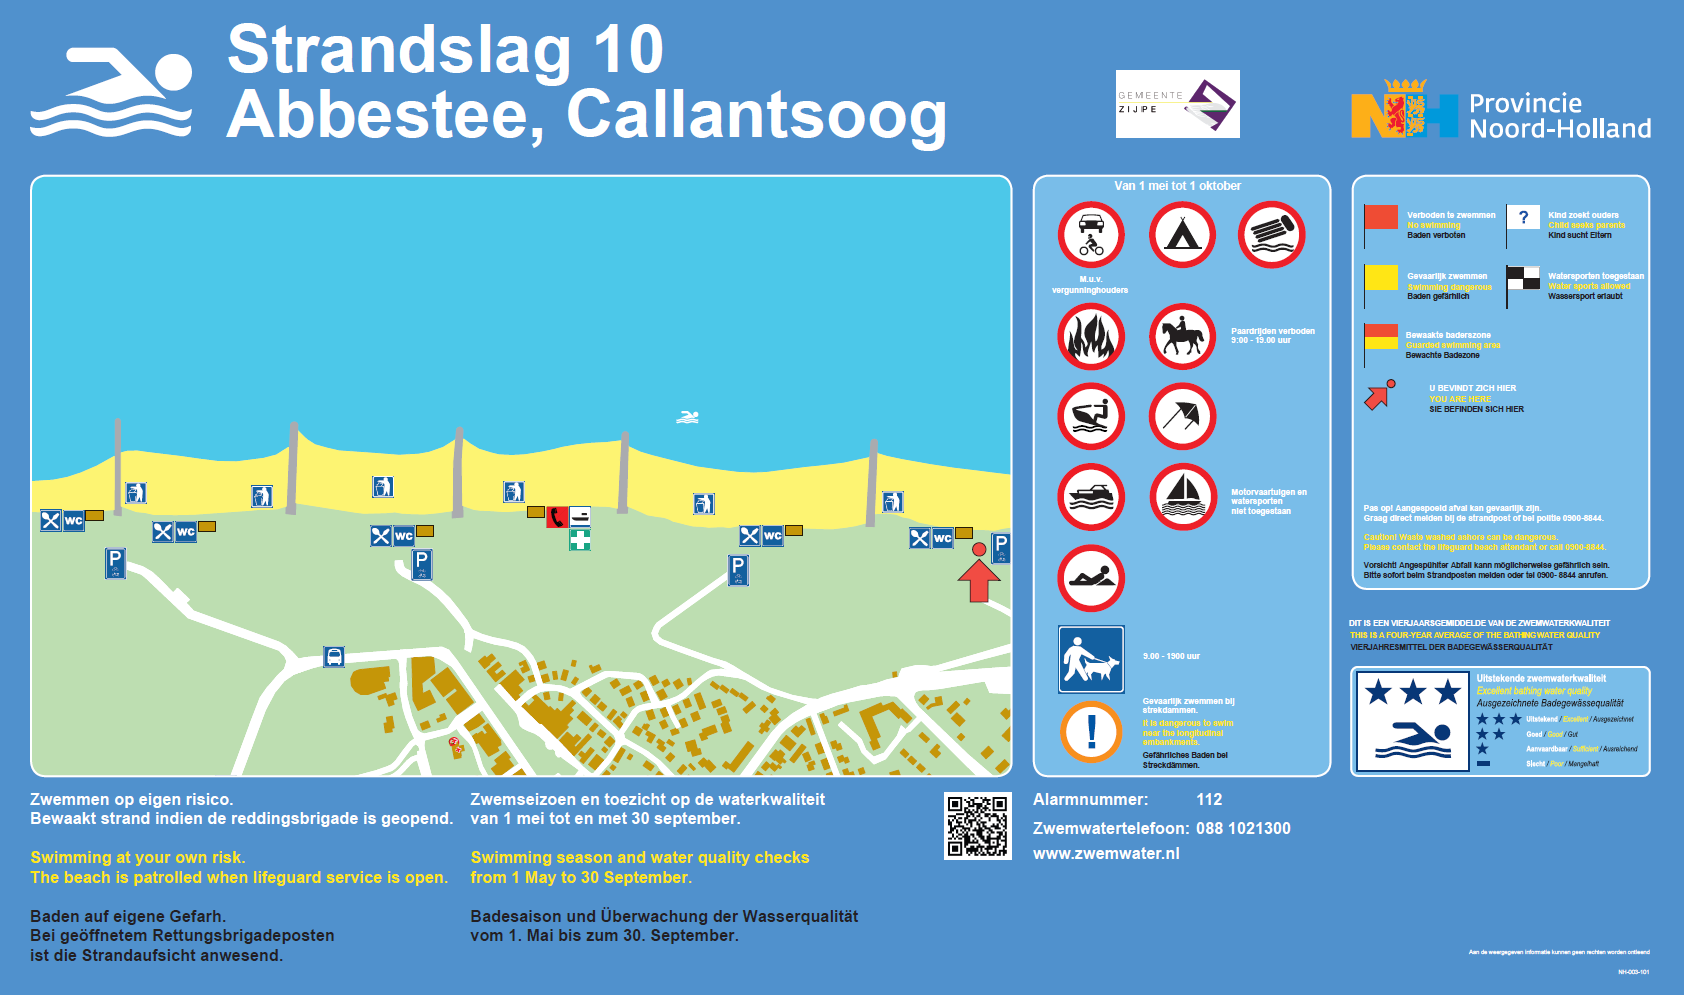 Het informatiebord bij zwemlocatie Callantsoog, Strandslag 10 Abbestee